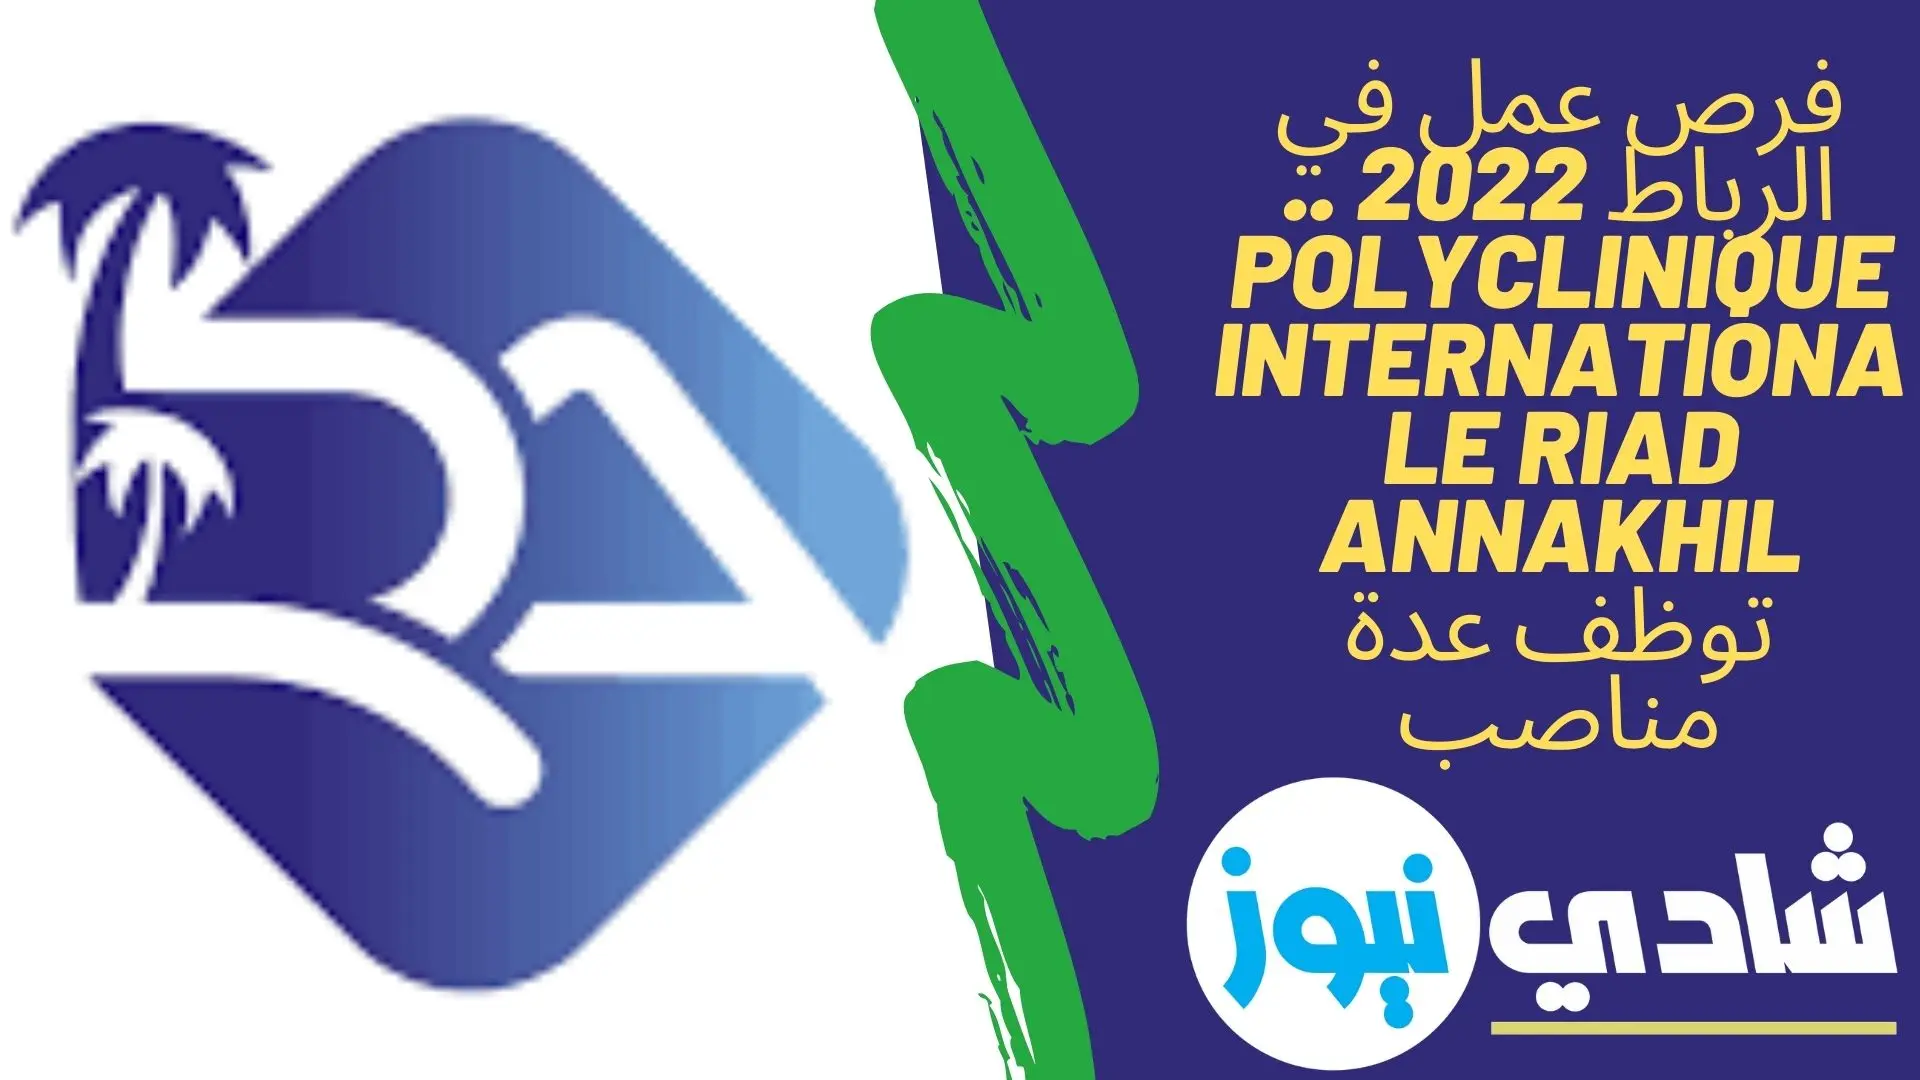 فرص عمل في الرباط 2022 .. Polyclinique Internationale Riad Annakhil توظف عدة مناصب